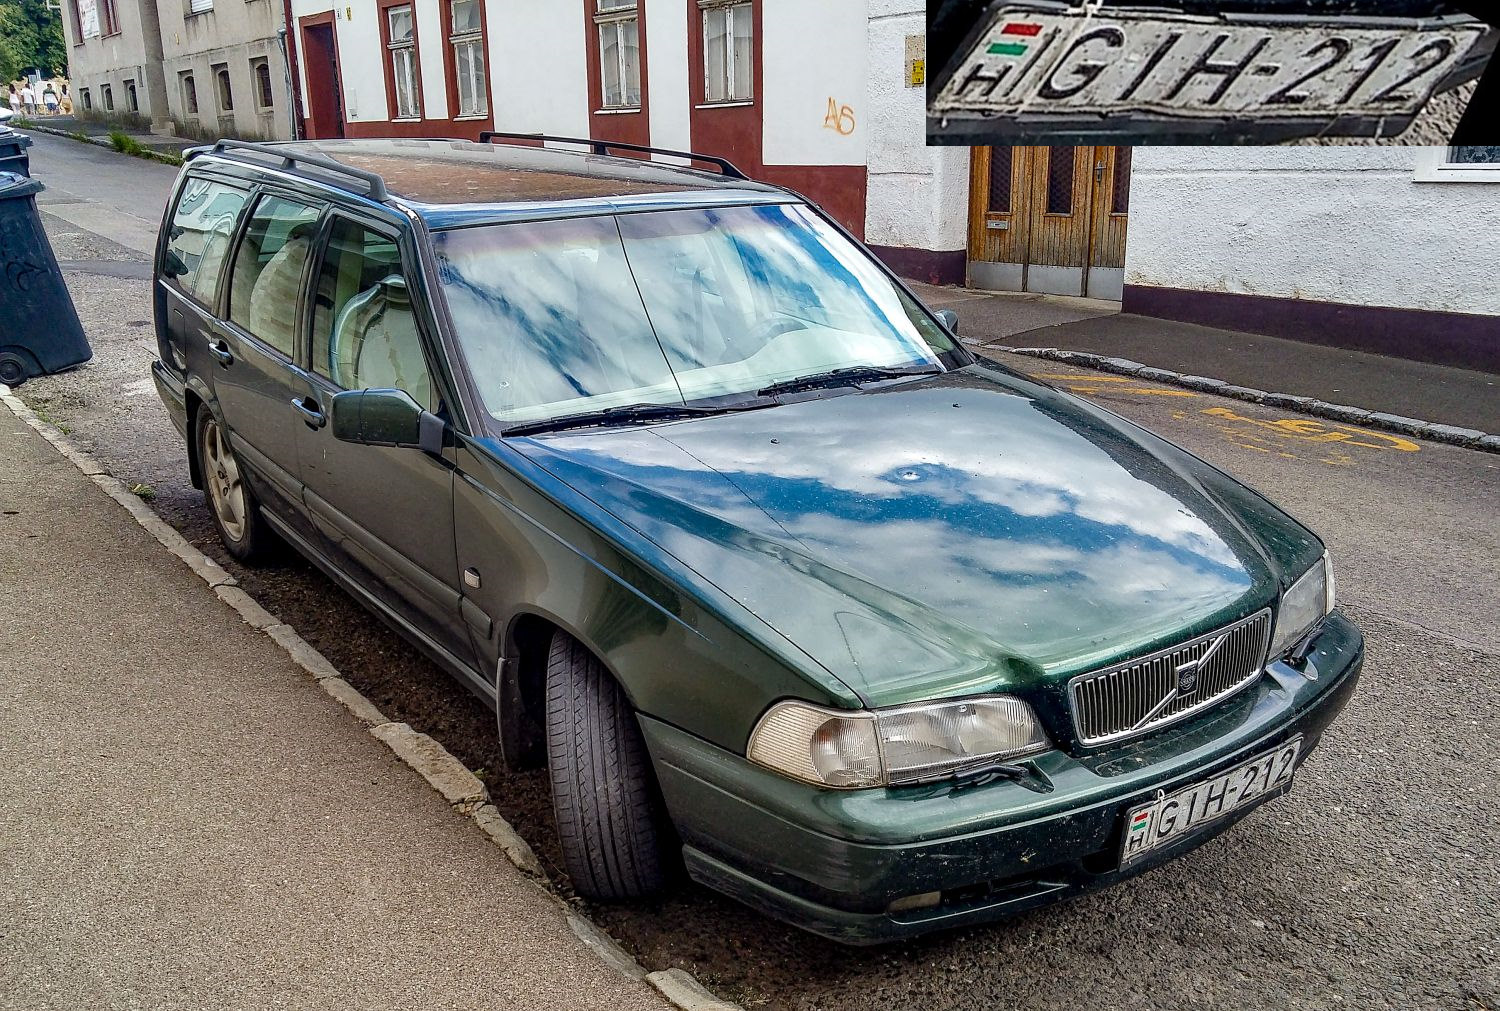 Volvo v70, der ersten Generation in  Emeradl Green  oder  Dark Olive . Foto: August, 2021.